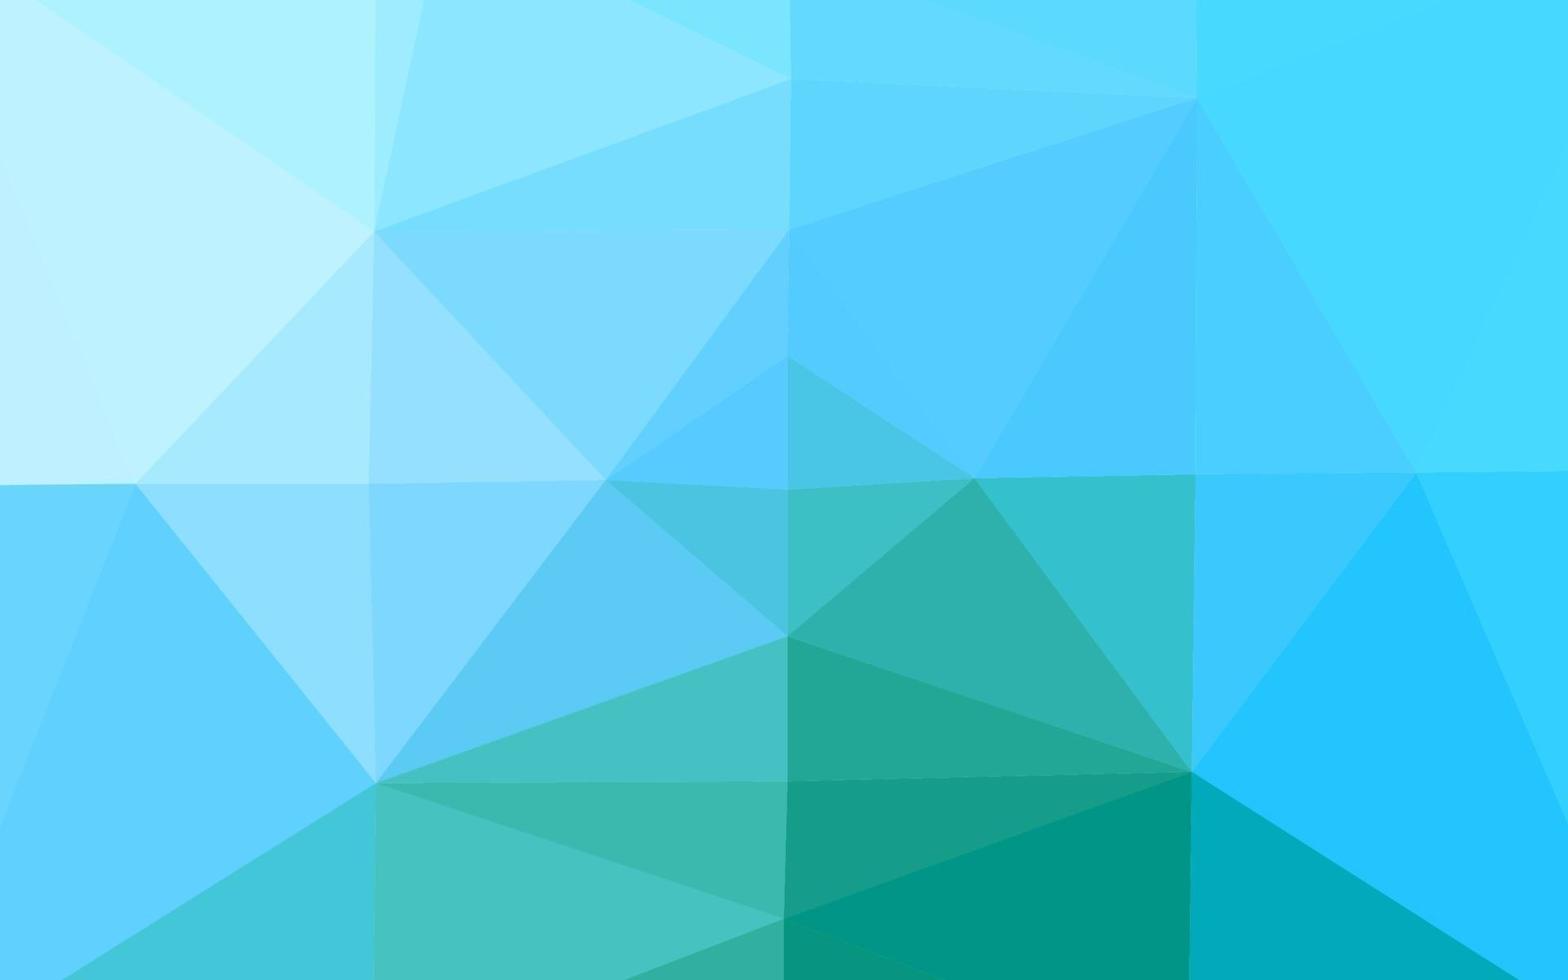 ljusblå, grön vektor polygon abstrakt layout.